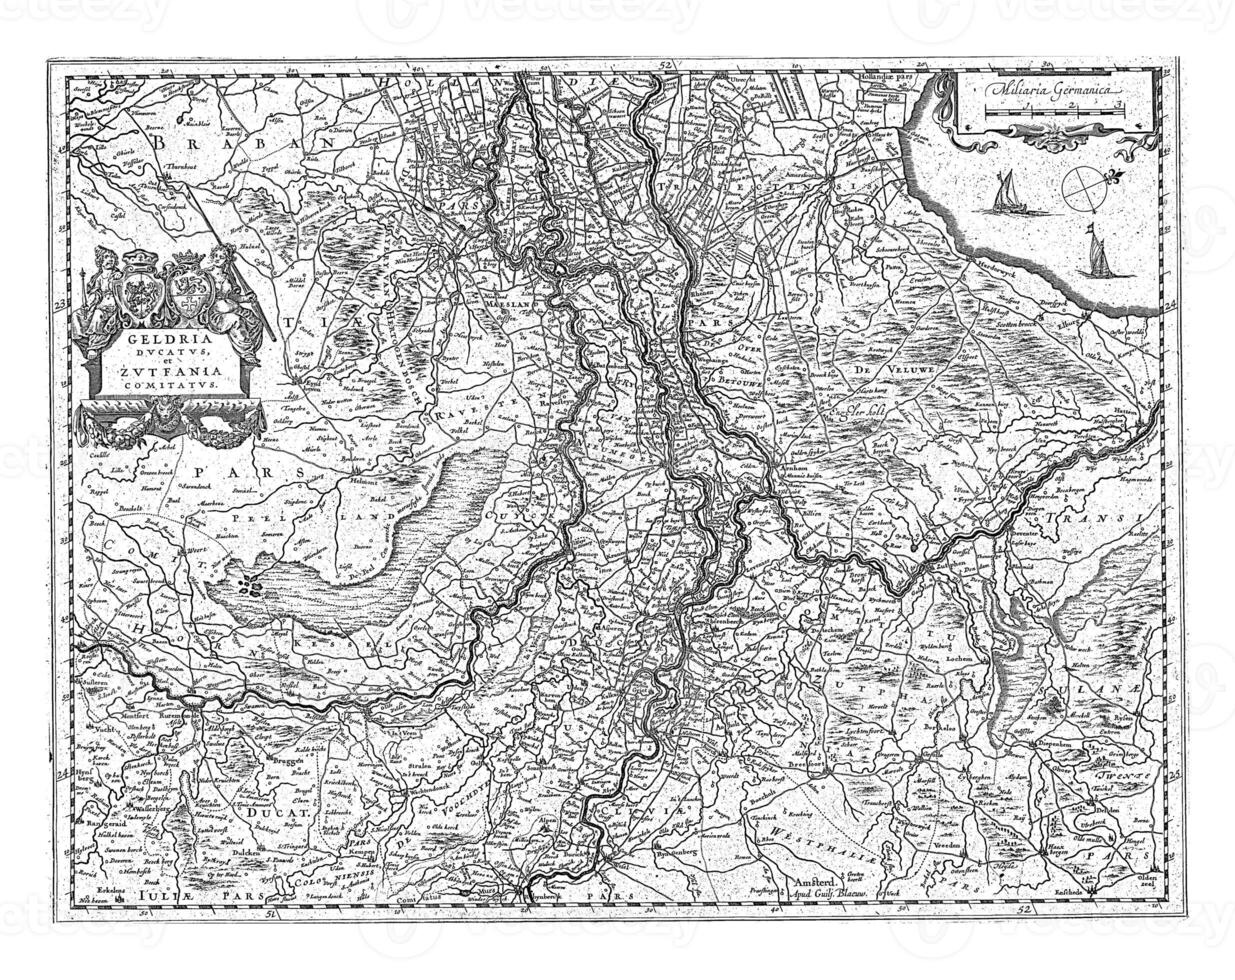 Karte von Gelderland und zutphen, Jahrgang Illustration. foto